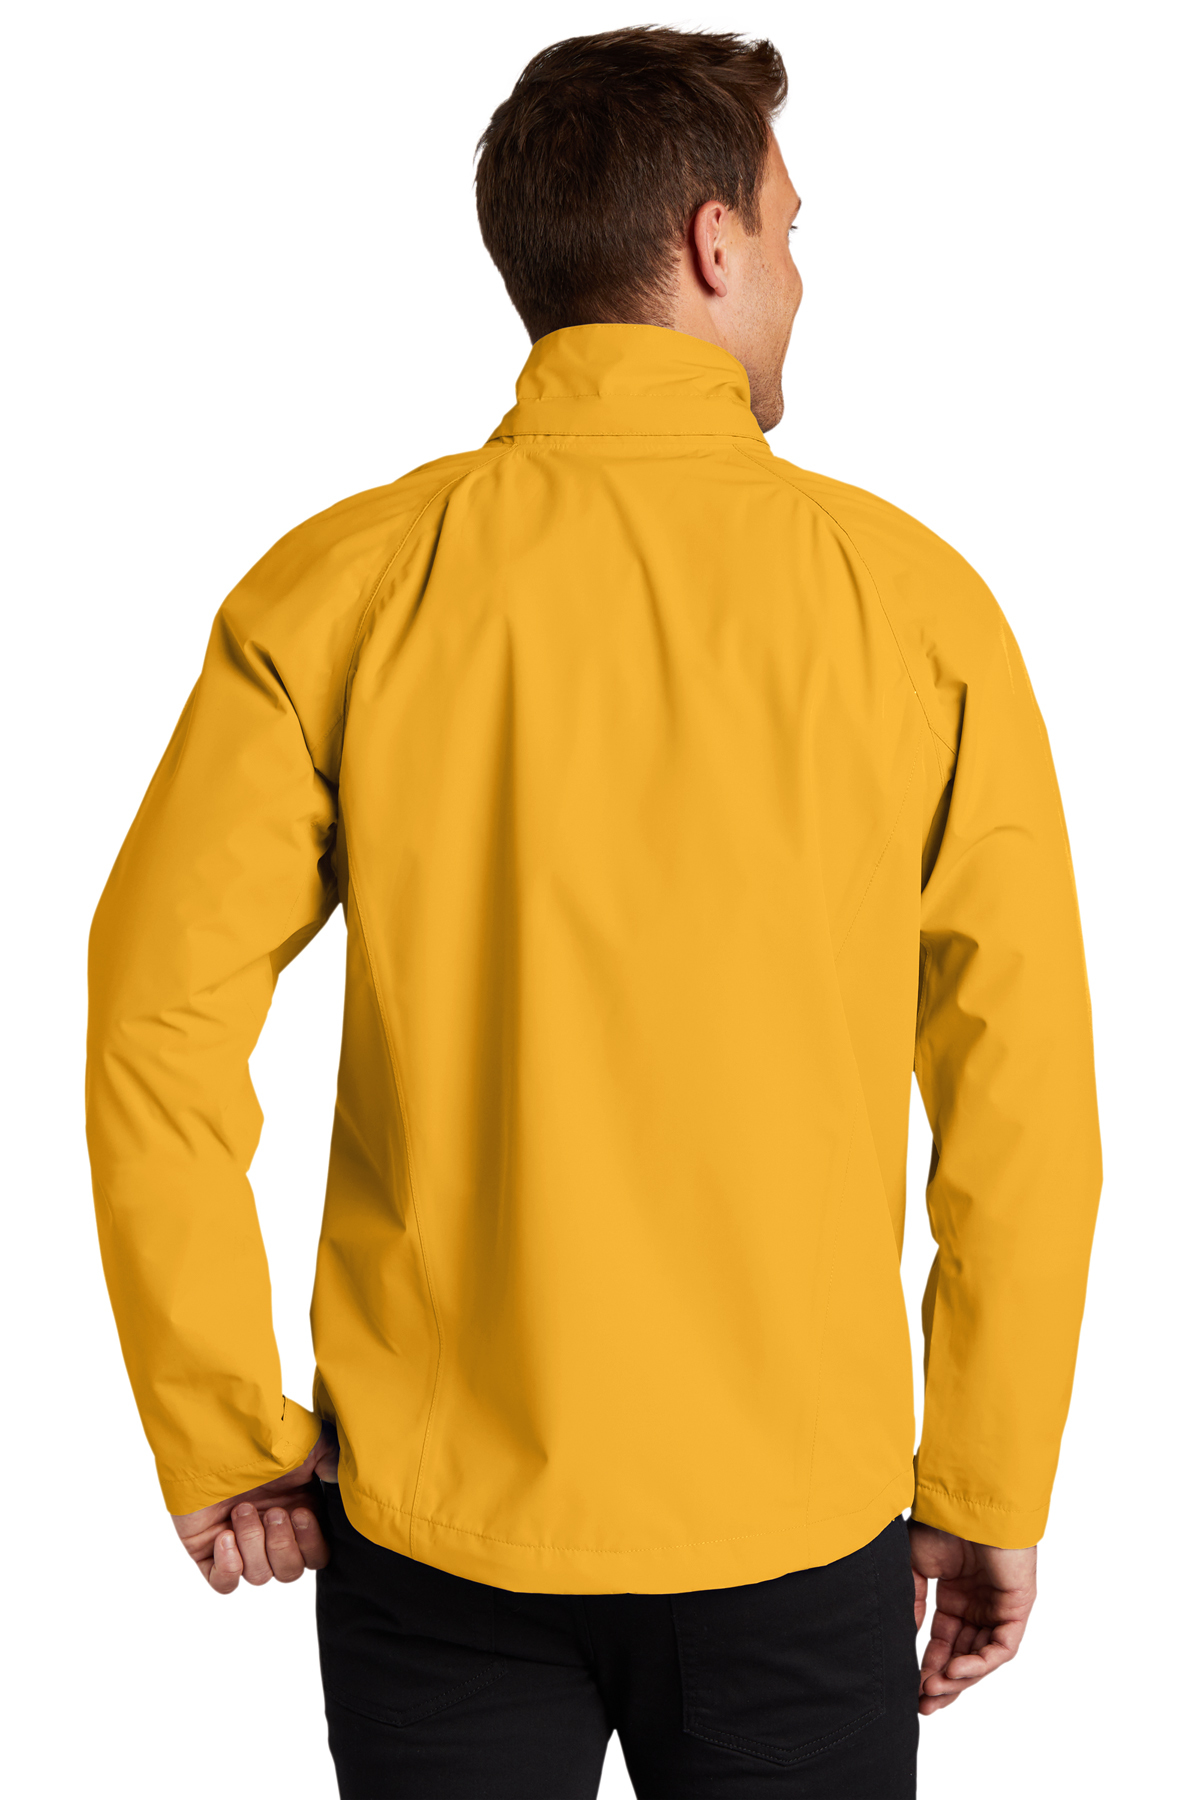 Port Authority Torrent Waterproof Jacket | Product | SanMar